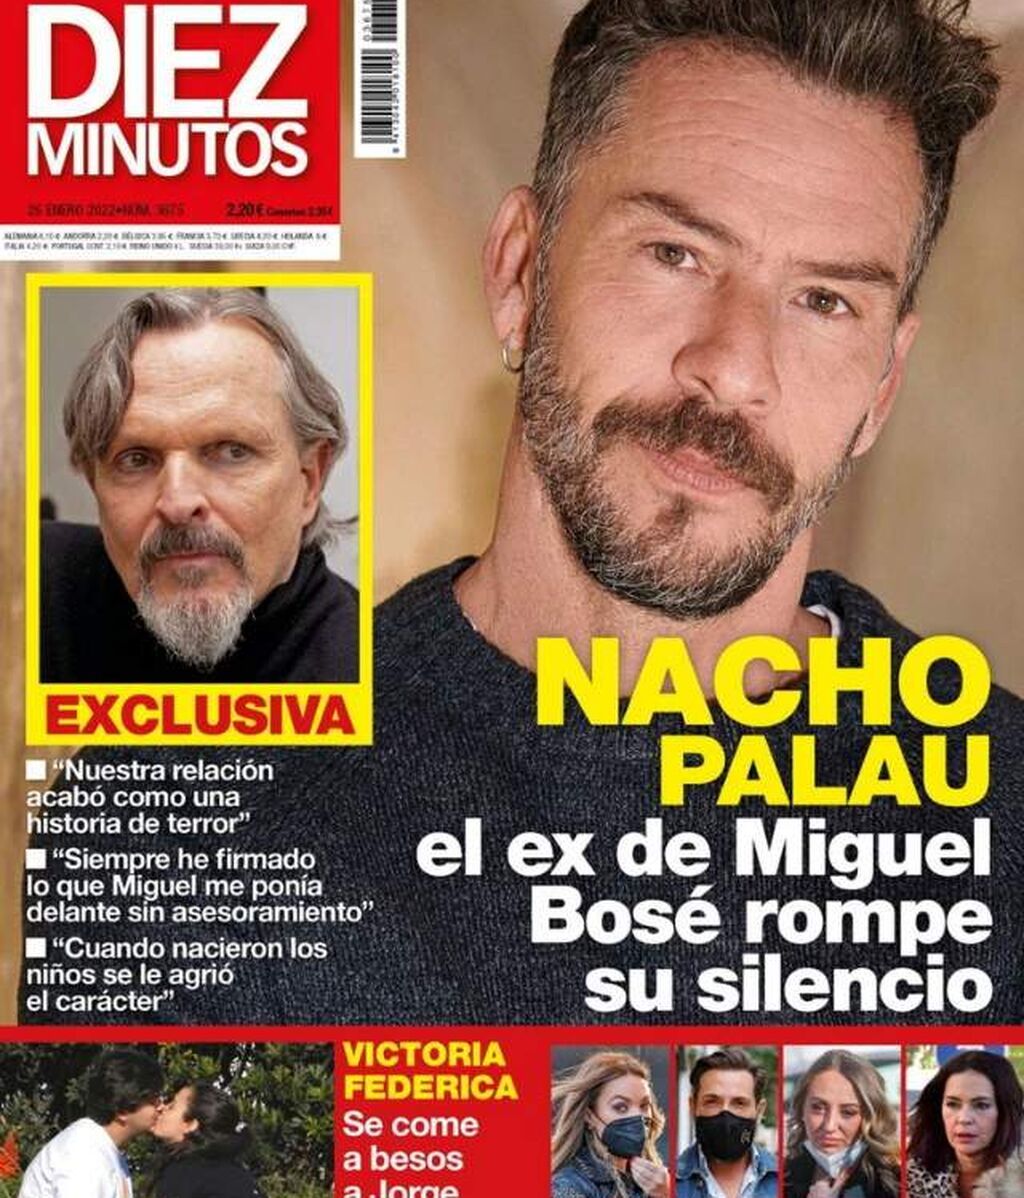 Nacho Palau, ex de Miguel Bosé, rompe su silencio